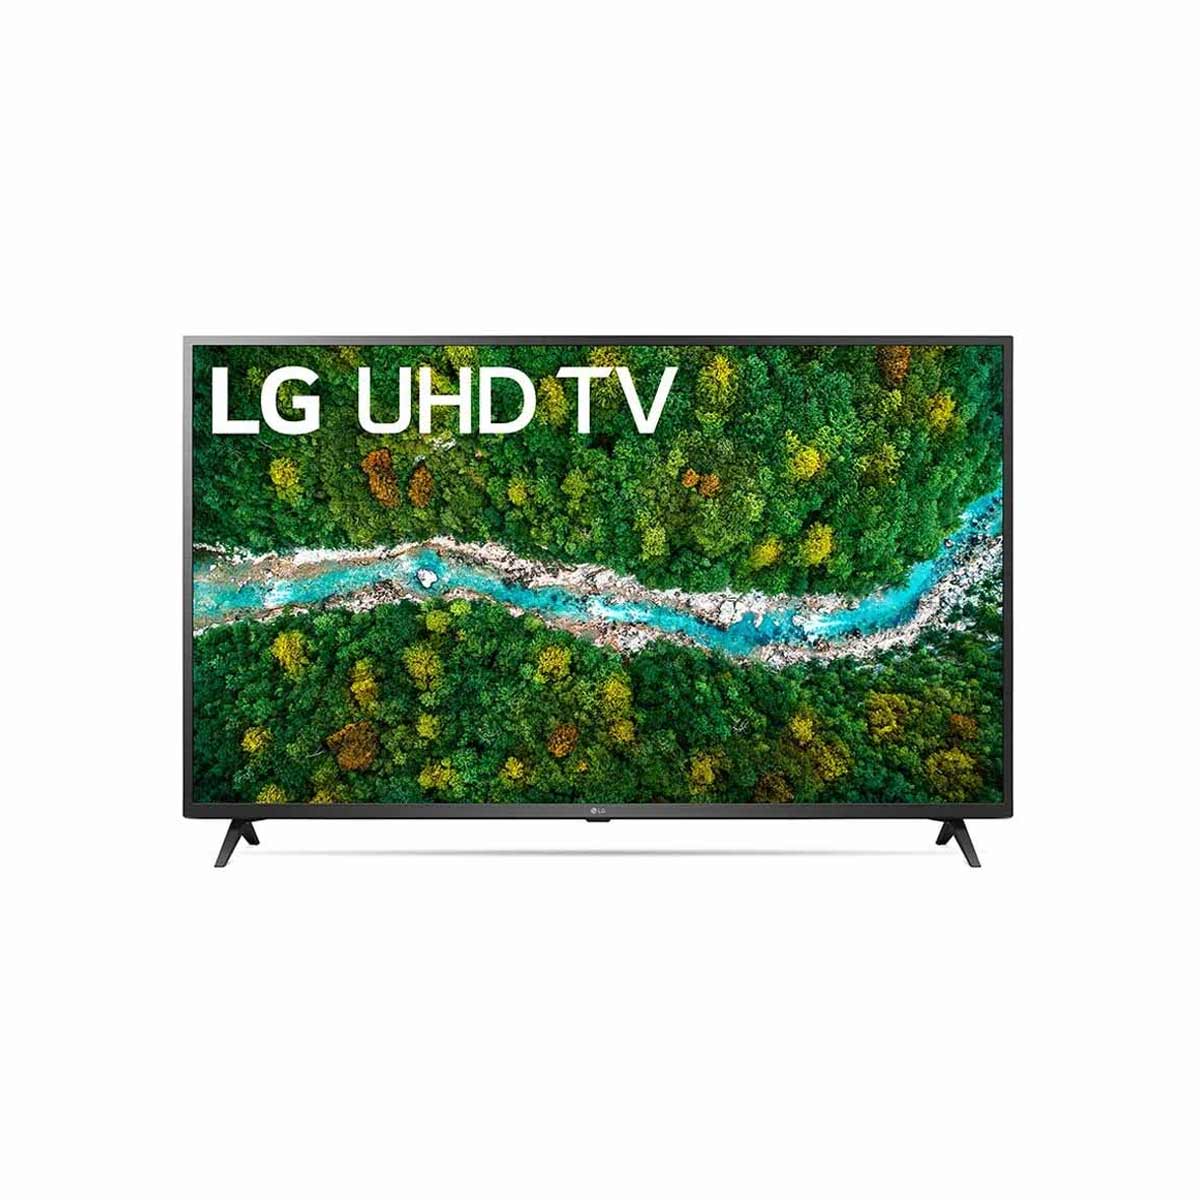 LG UHD 4K LED TV 65-Inch UP76